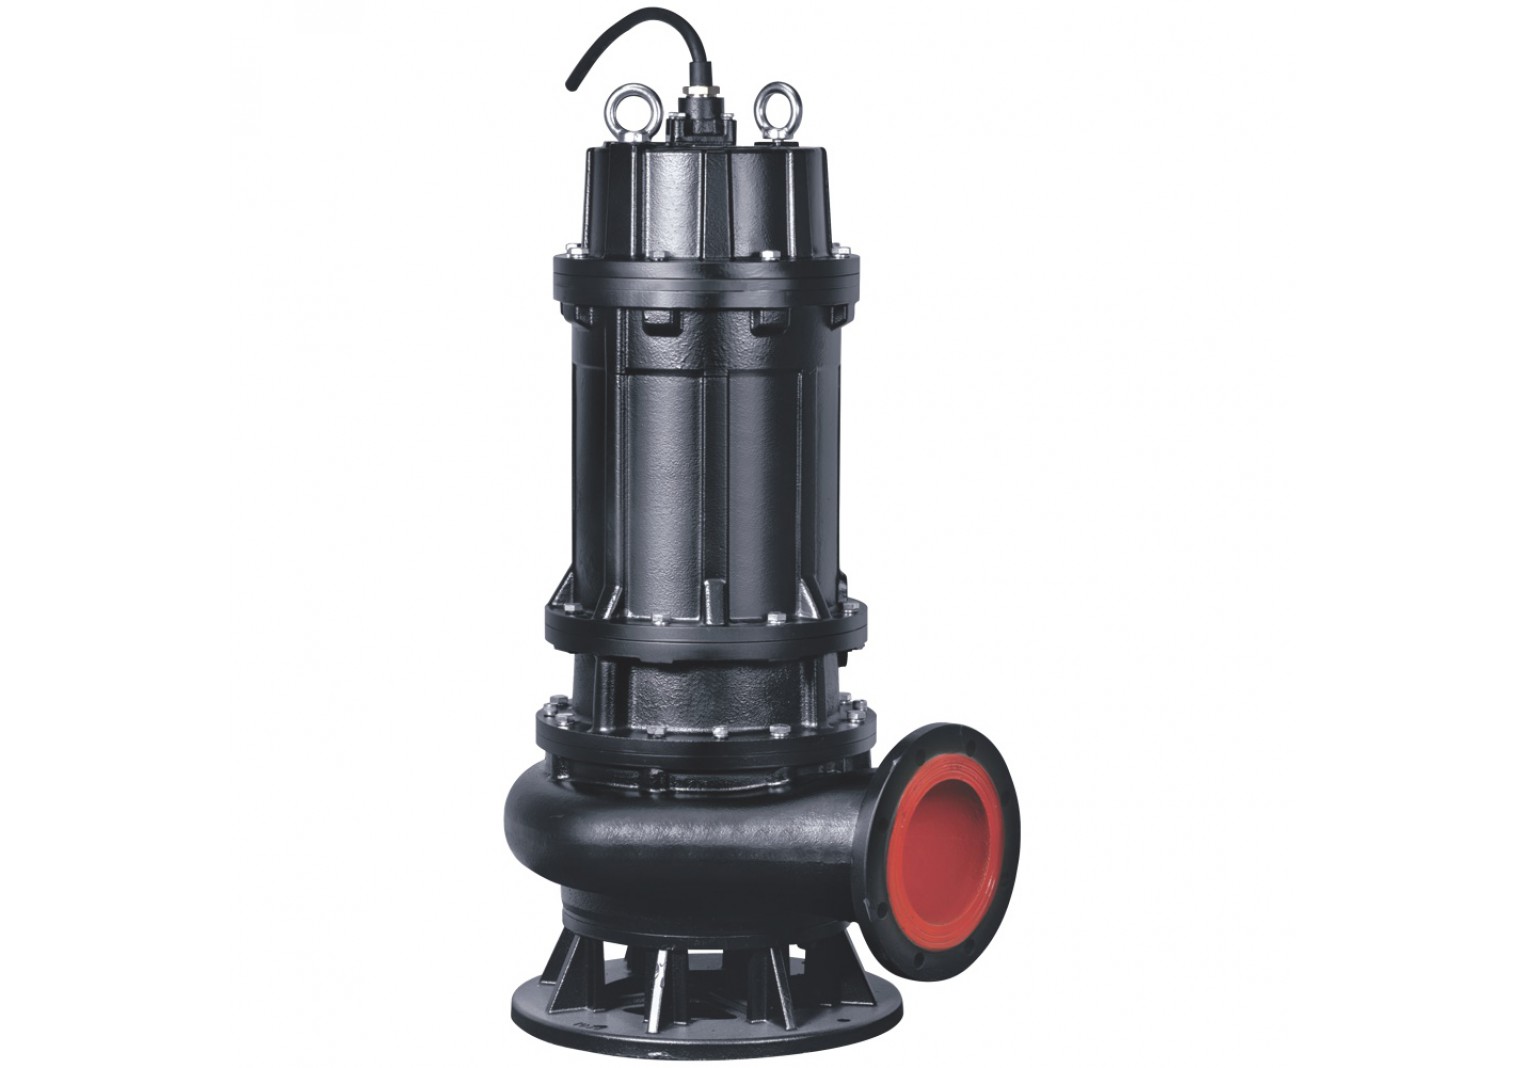 37kw Submersible Sewage Water Pump